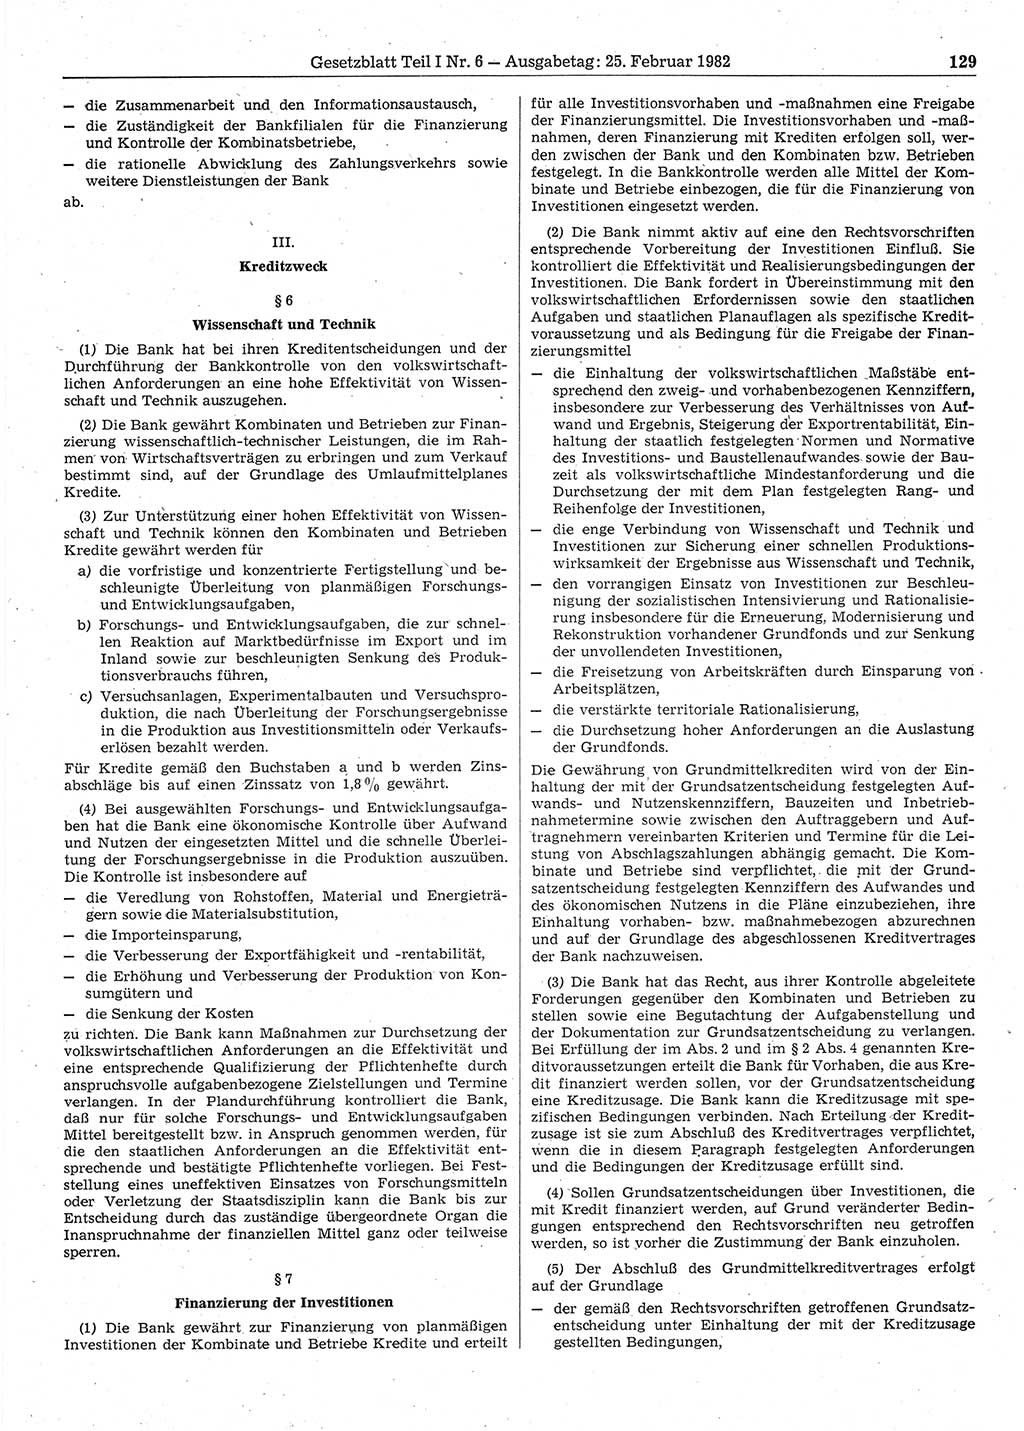 Gesetzblatt (GBl.) der Deutschen Demokratischen Republik (DDR) Teil Ⅰ 1982, Seite 129 (GBl. DDR Ⅰ 1982, S. 129)